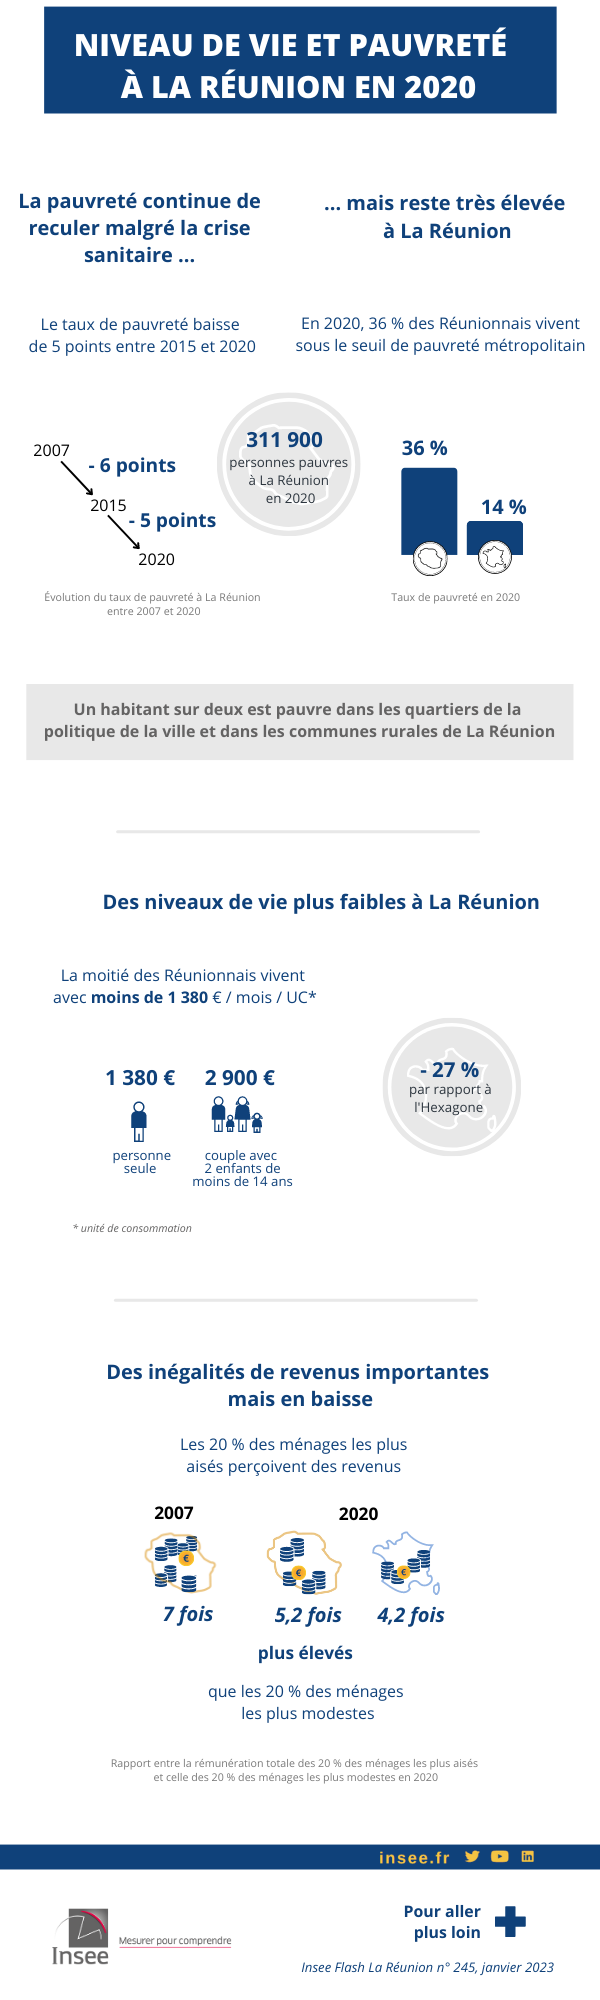 Infographie de l'Insee Flash La Réunion « Le taux de pauvreté continue de baisser en 2020, malgré la crise sanitaire ».